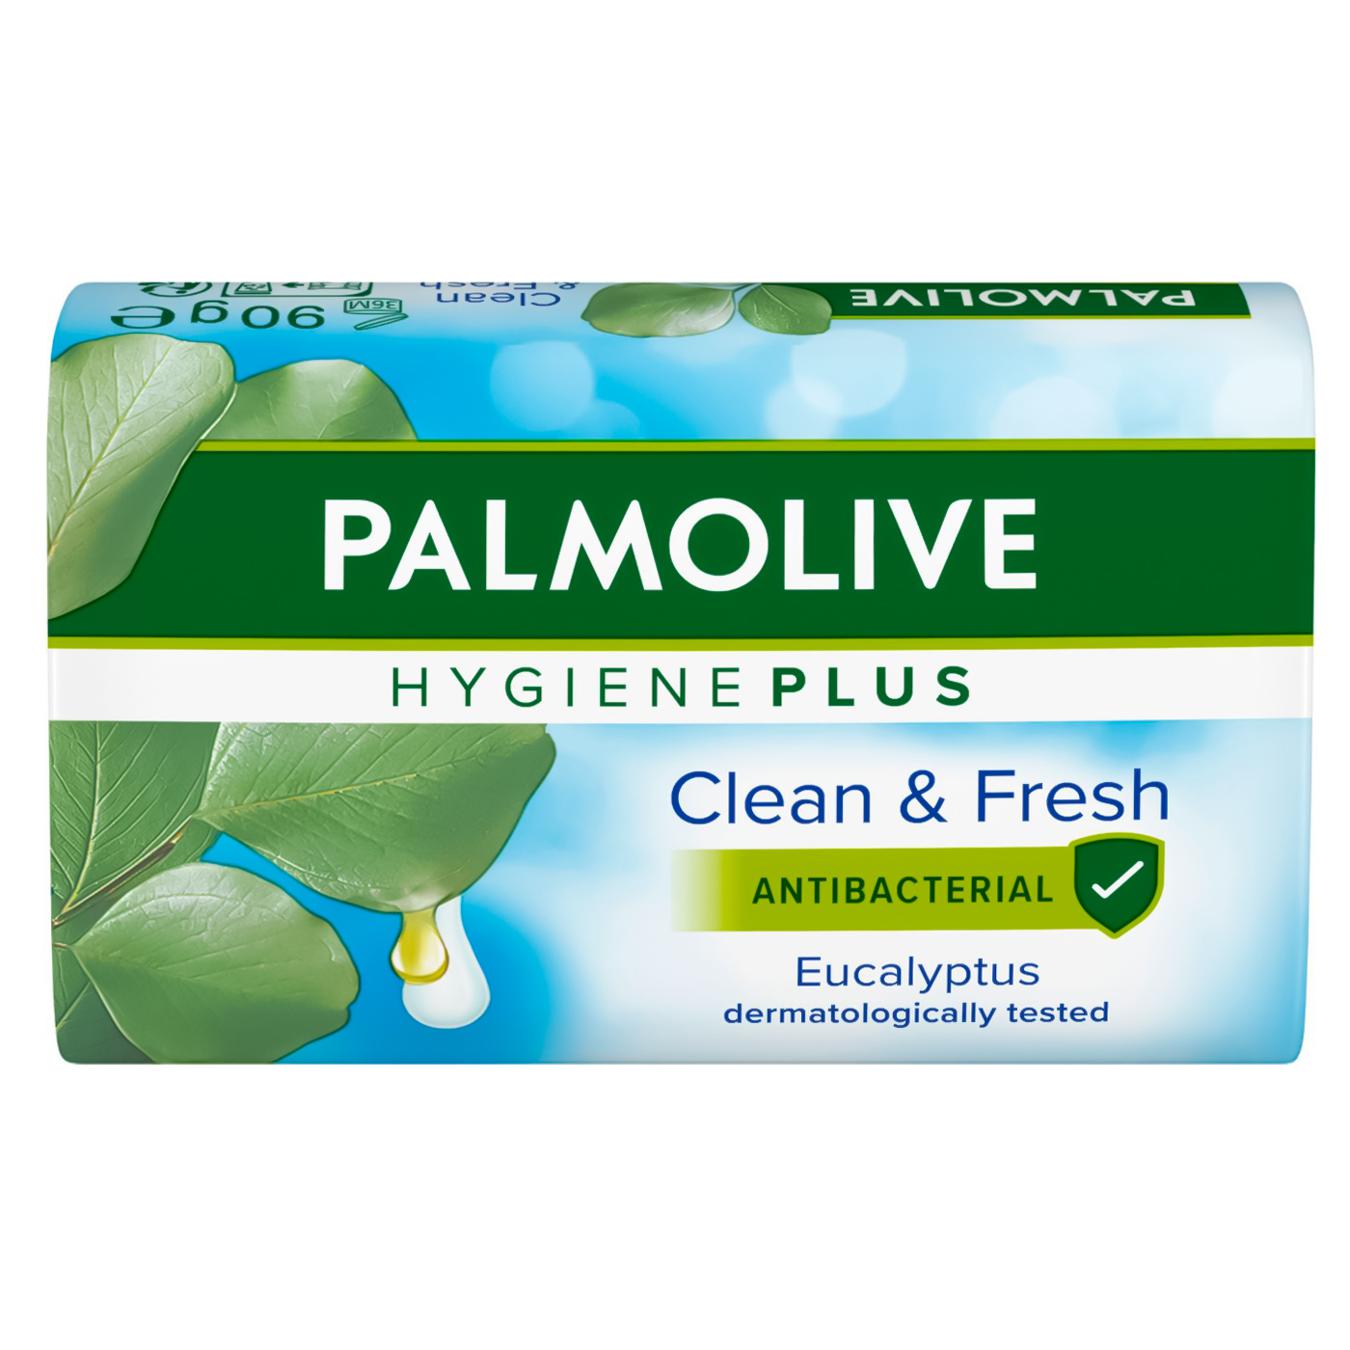 Мыло Palmolive гигиена плюс эвкалипт 90г